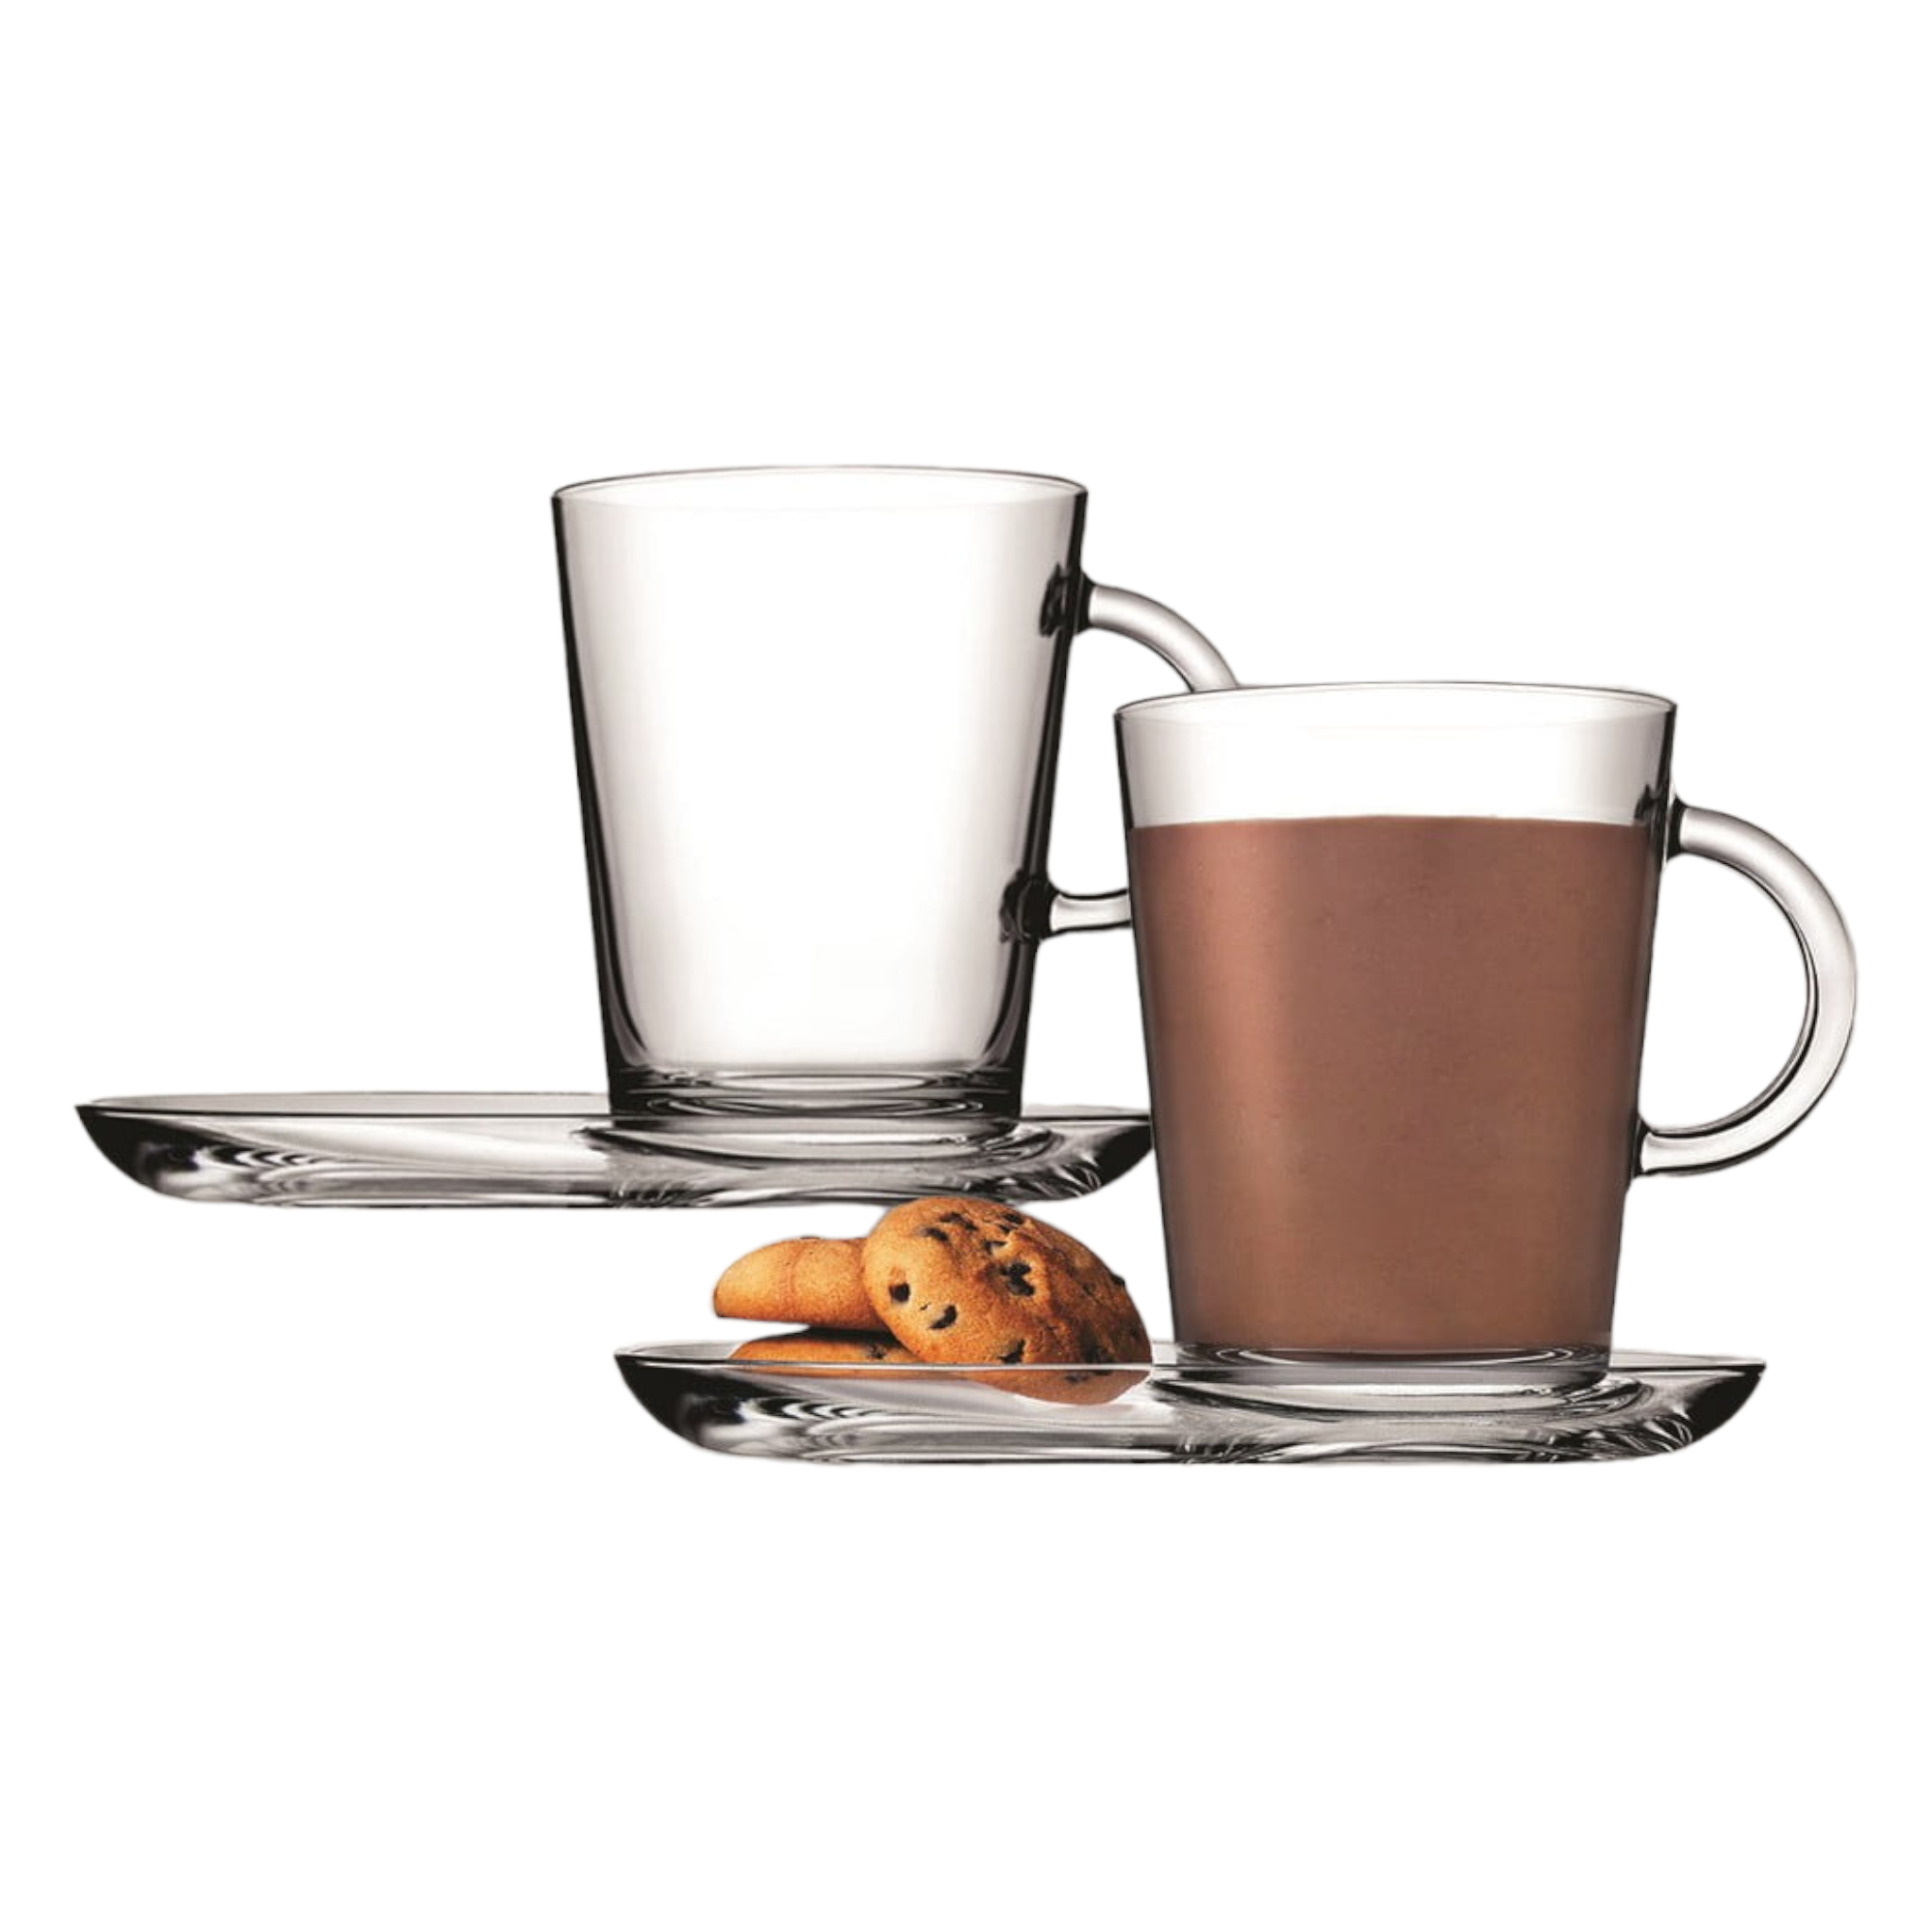 Pasabahce Tribecca Café Latte Mug 400ml with Plate 2pc Set 23581